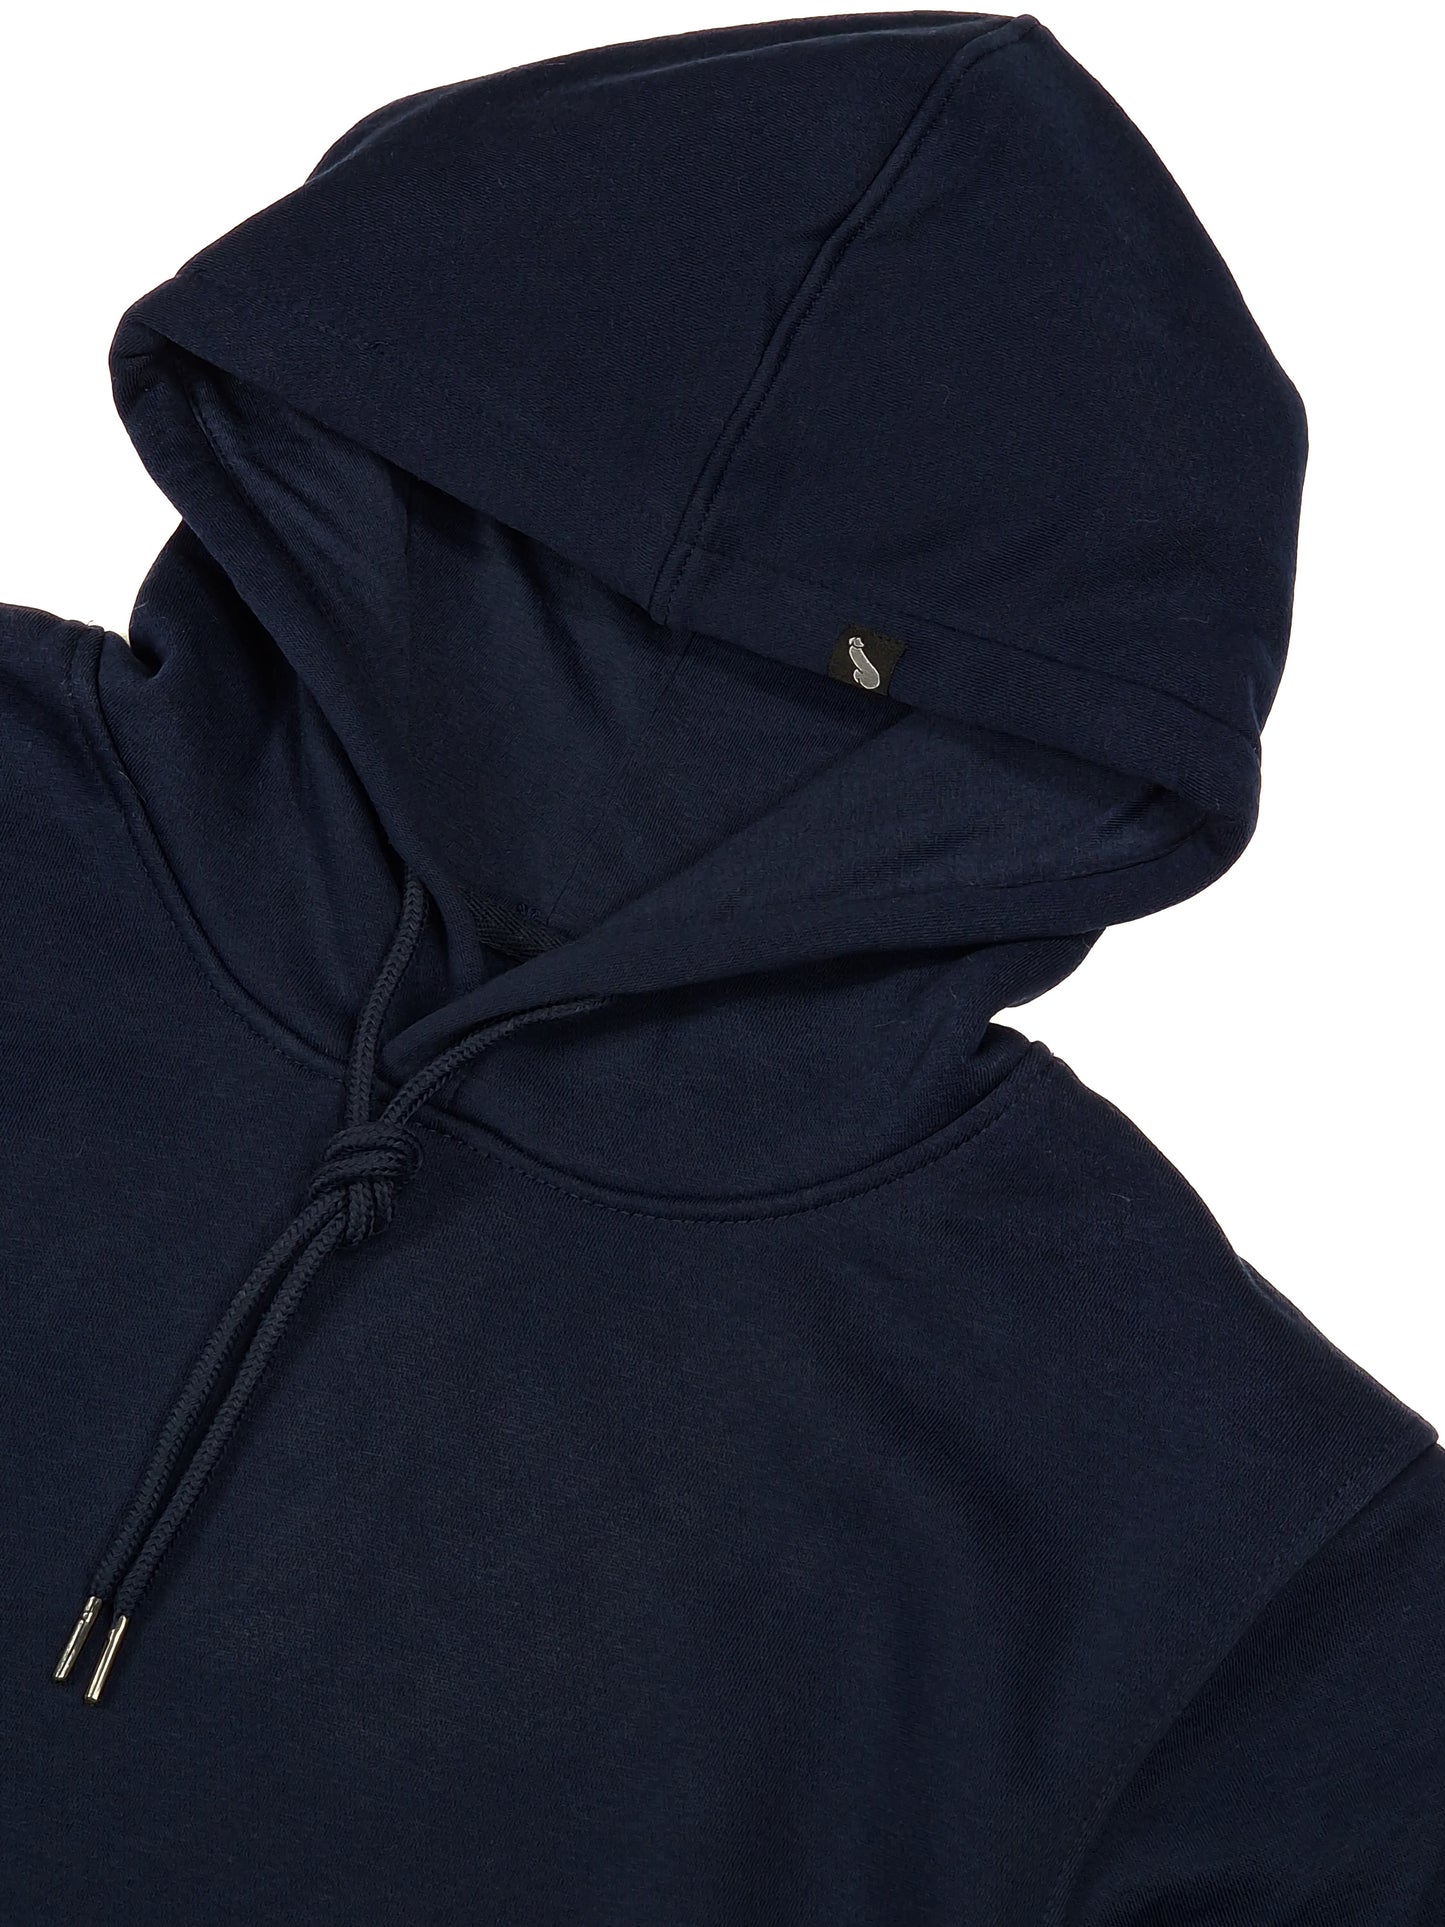 Marinblå herr eller dam hoodie eller huvtröja i hög kvalité till ett lågt pris